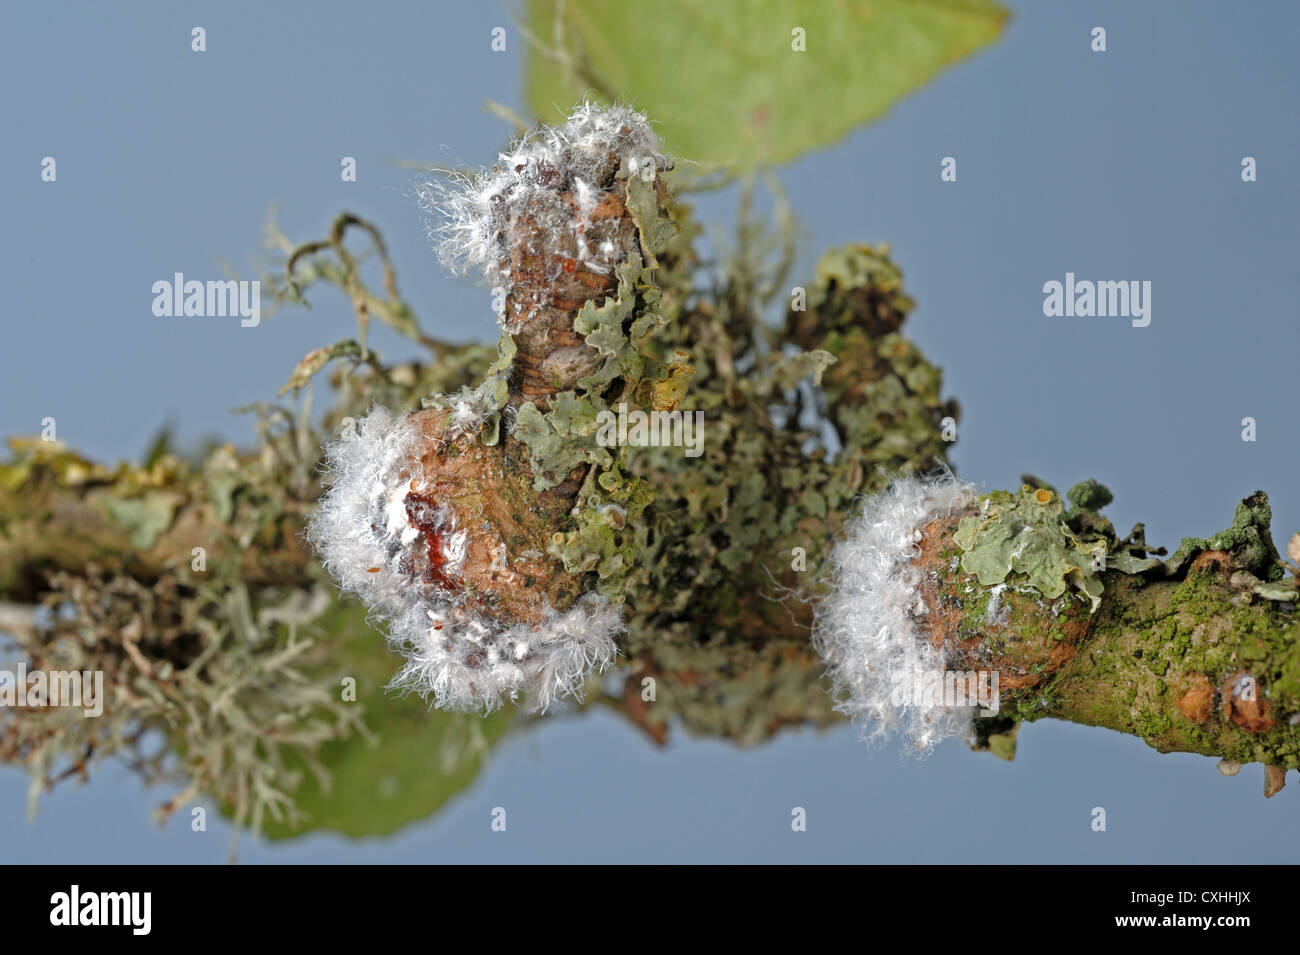 Wollige Blattlaus Eriosoma Lanigerum Kolonie und Narben mit wachsartige Extrusionen und Blattläuse auf Apfelholz Stockfoto